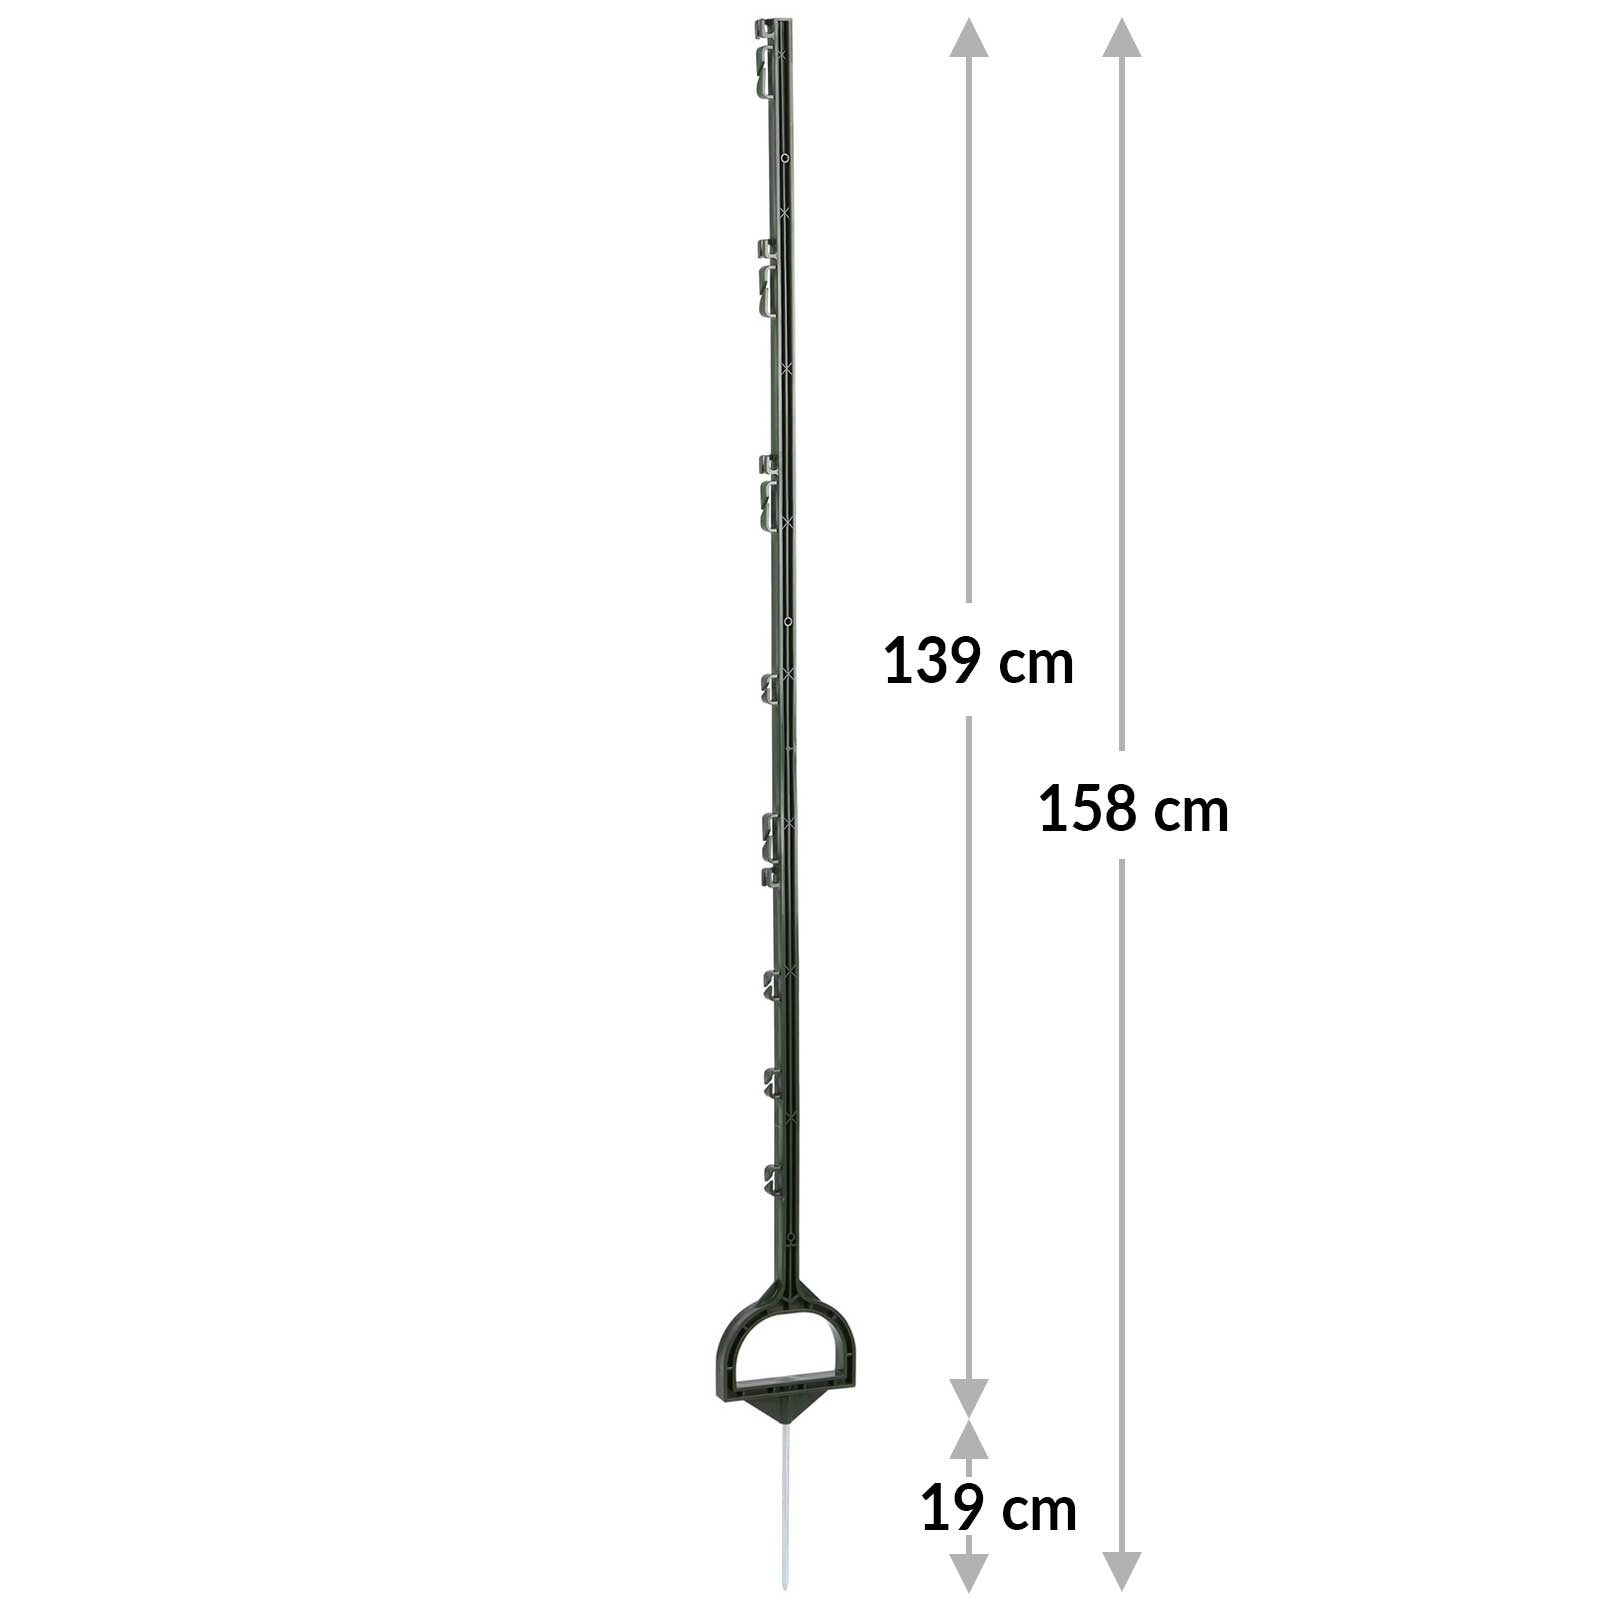 Steigbügelpfahl 158 cm, grün (5er Pack)